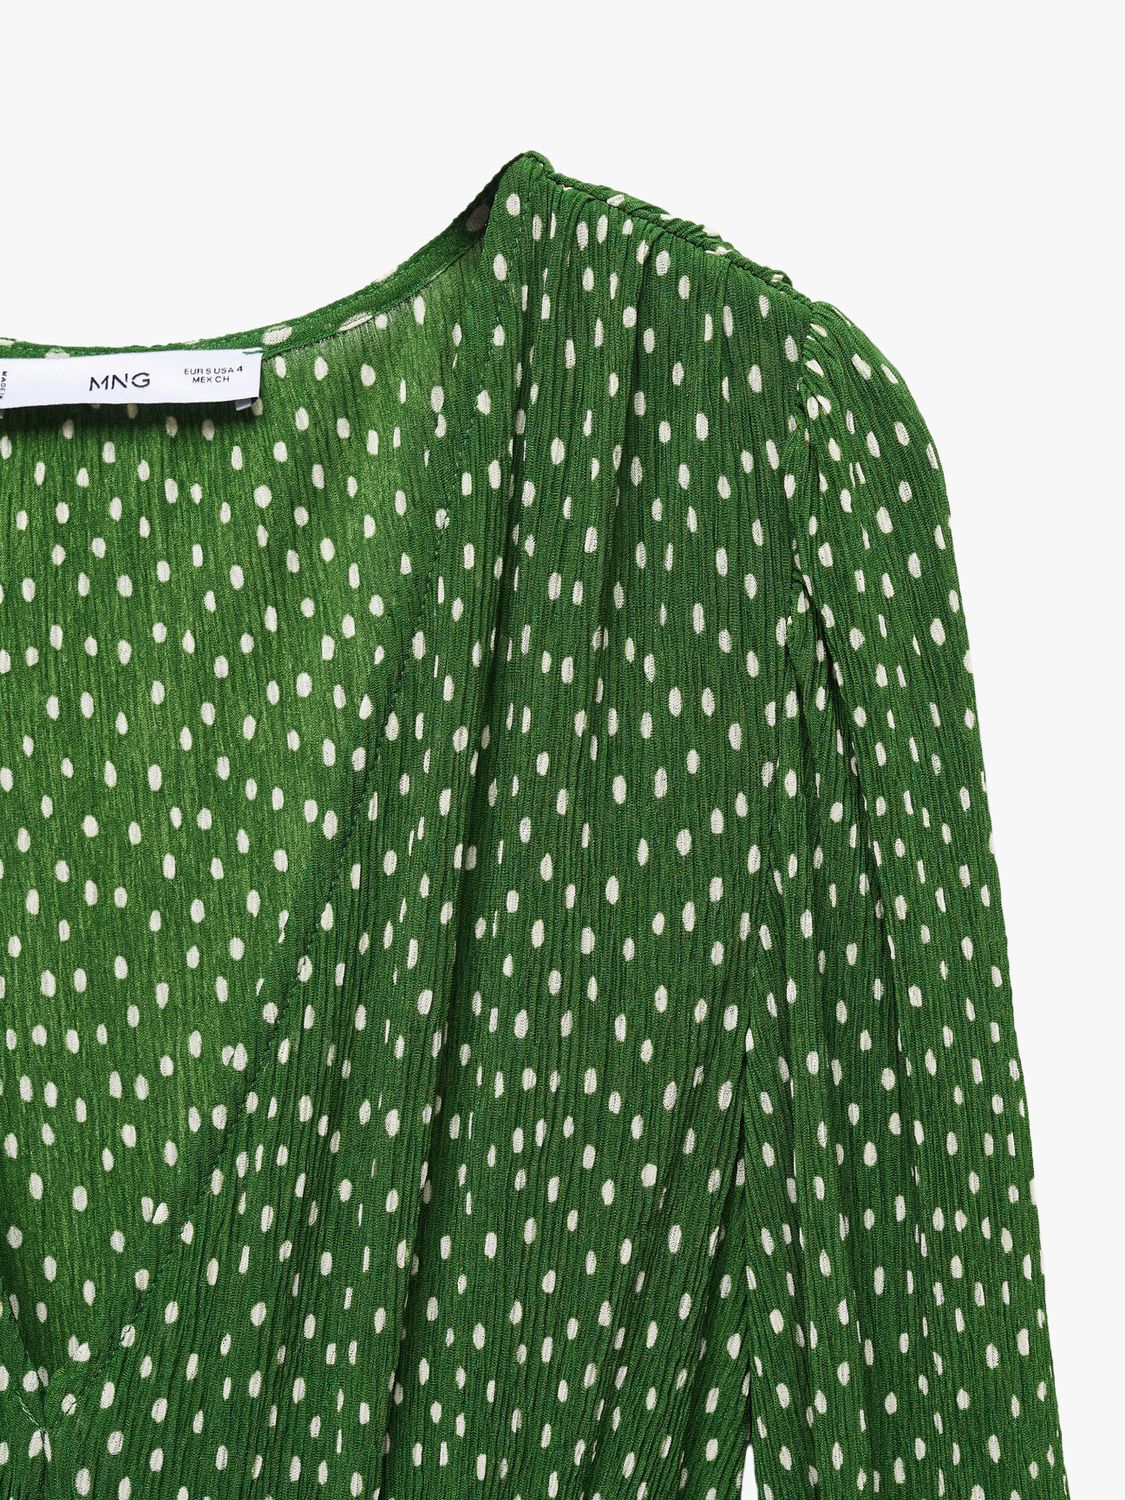 Mango Mar Spot Print Midi Dress, Green, 12